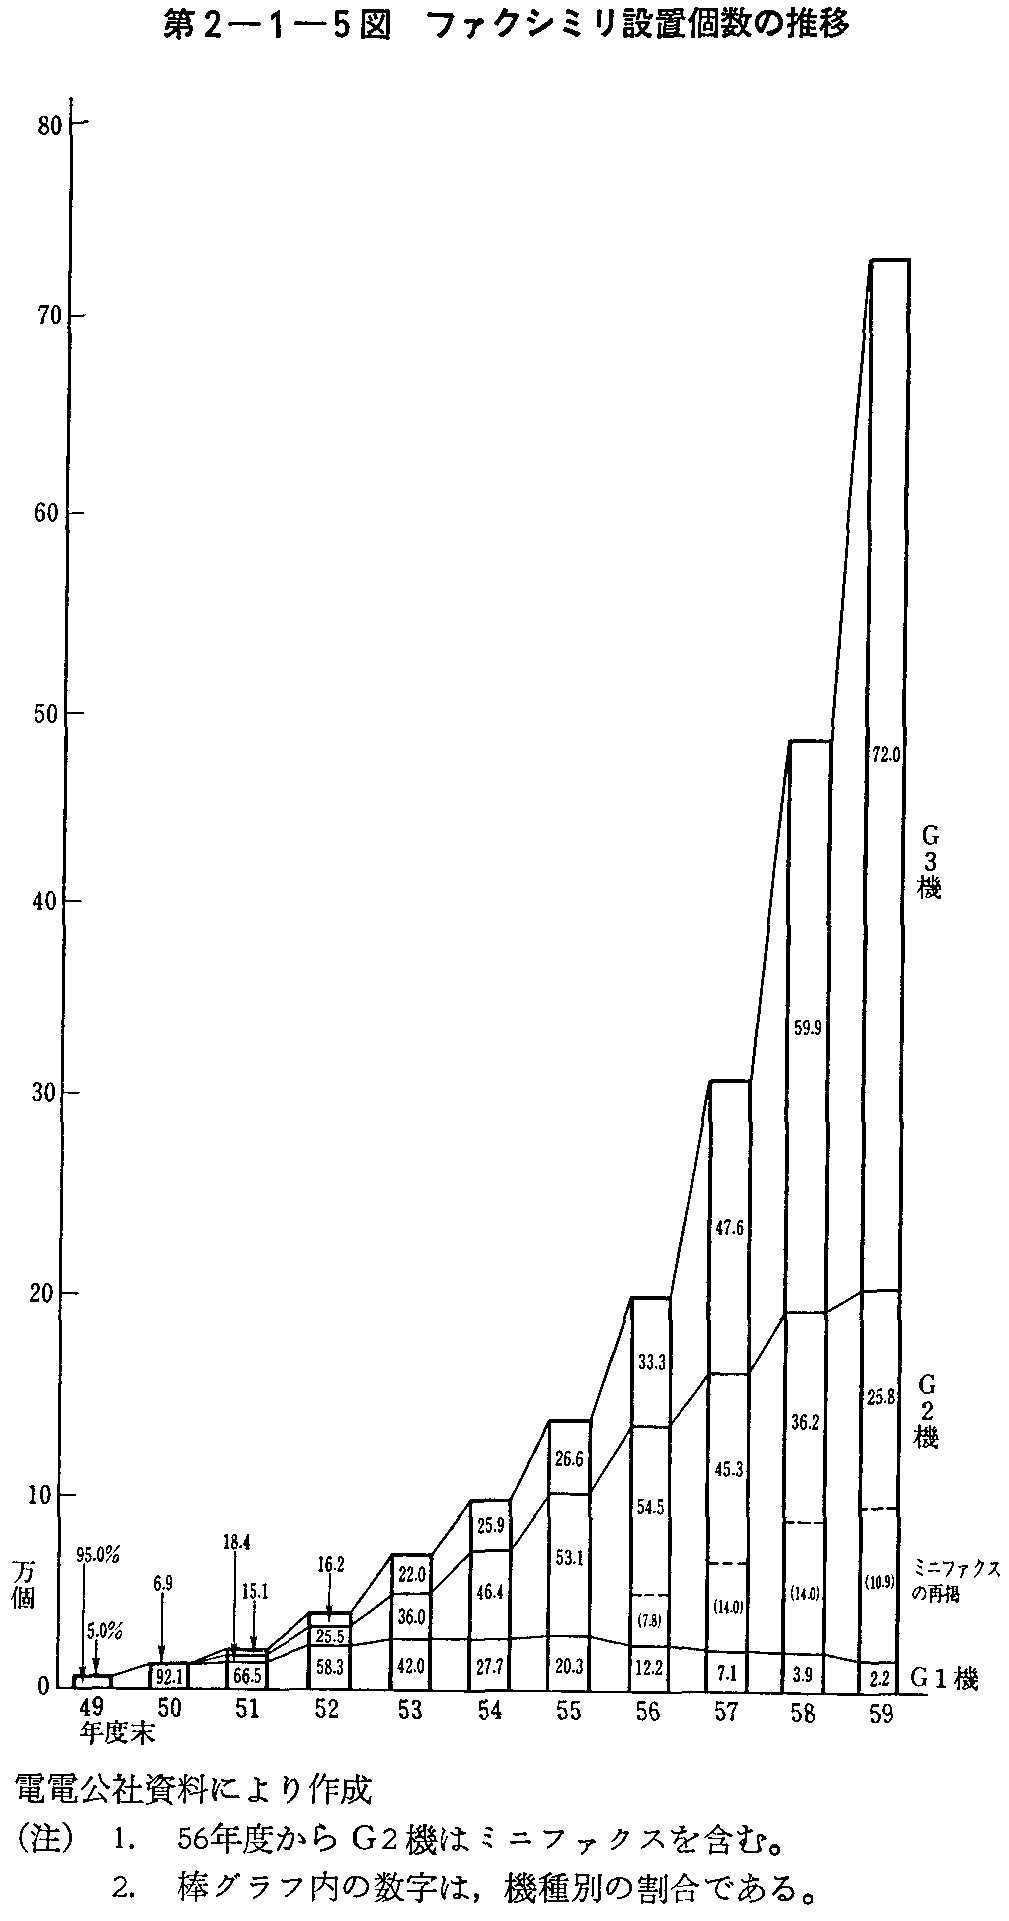 第2-1-5図 ファクシミリ設置個数の推移